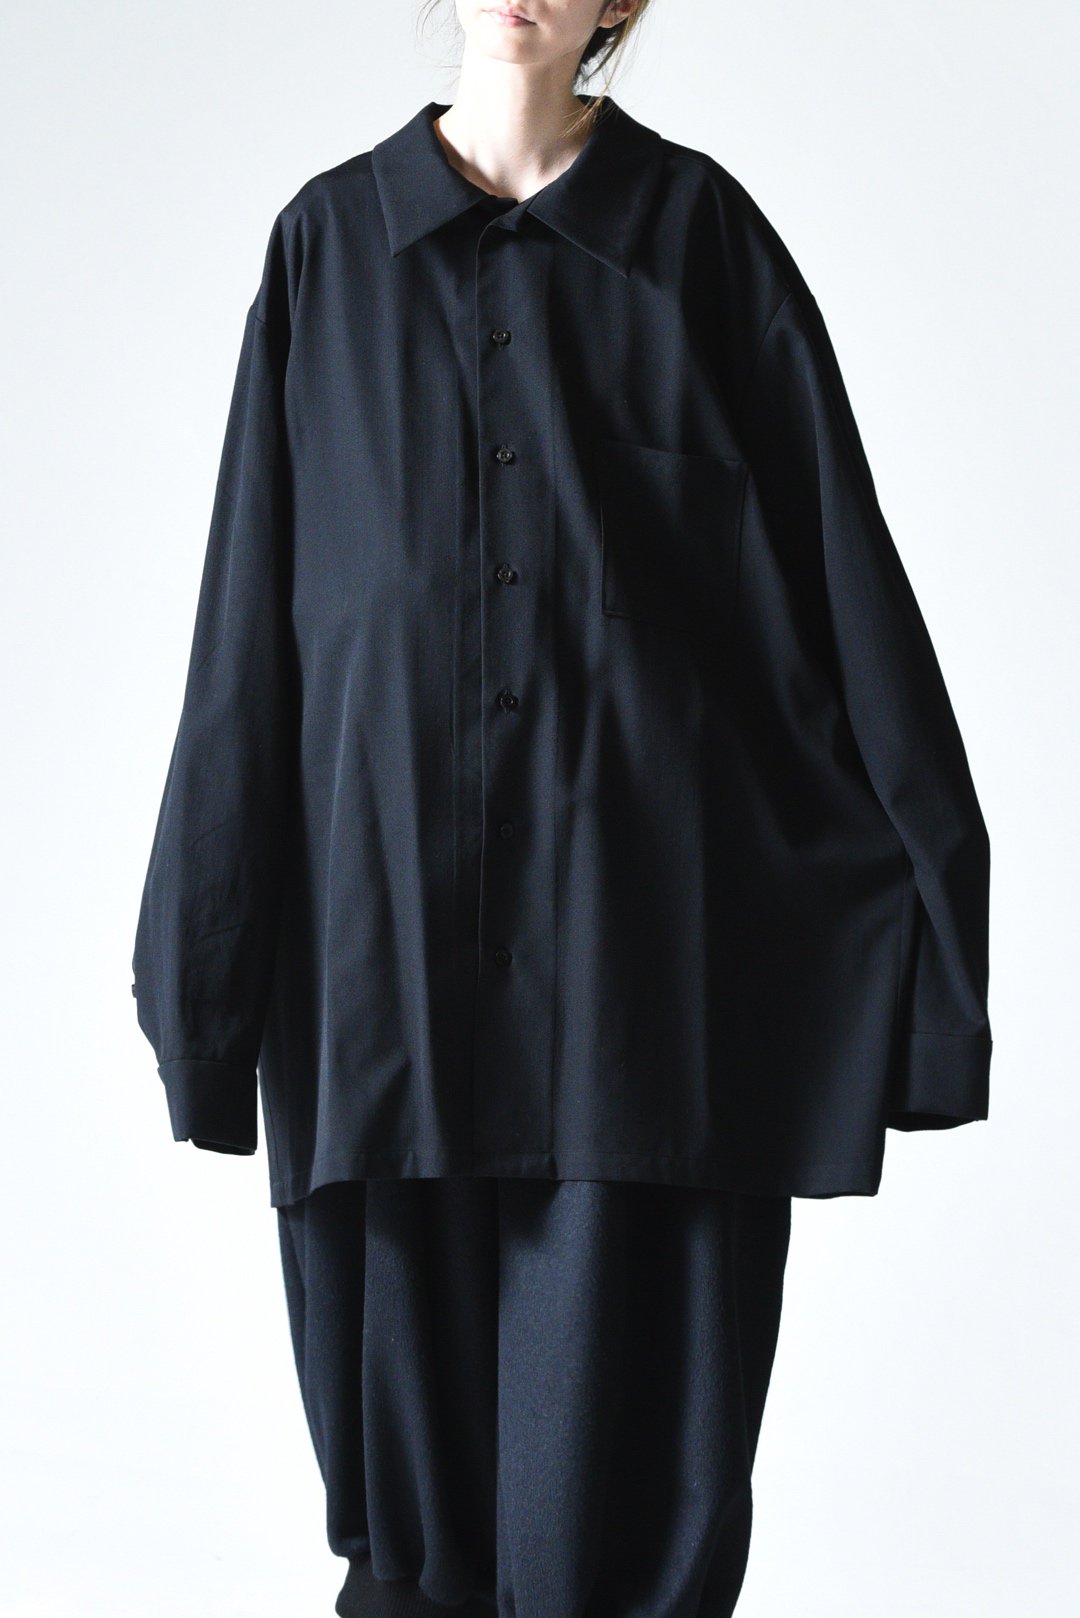 BISHOOL Wool Gabardine Long Shirt black - BISHOOL,Edwina Horl,My ...